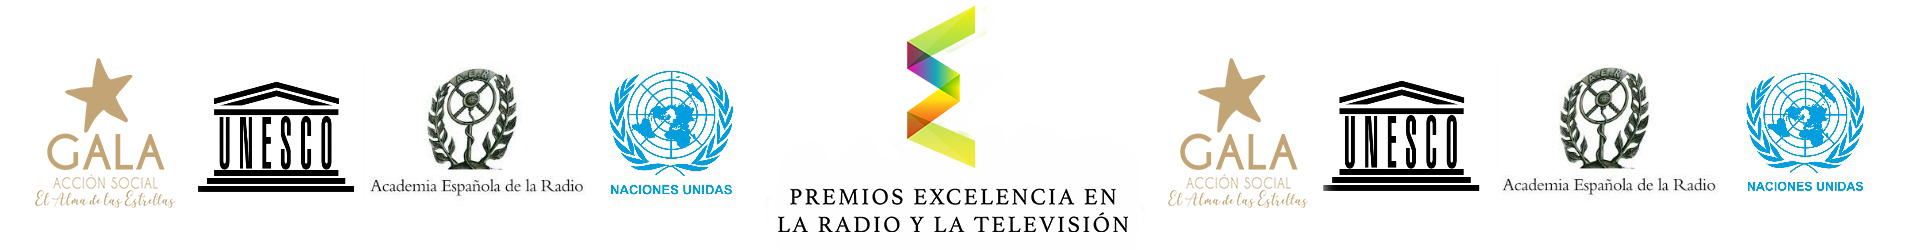 Premios Radio Televisión